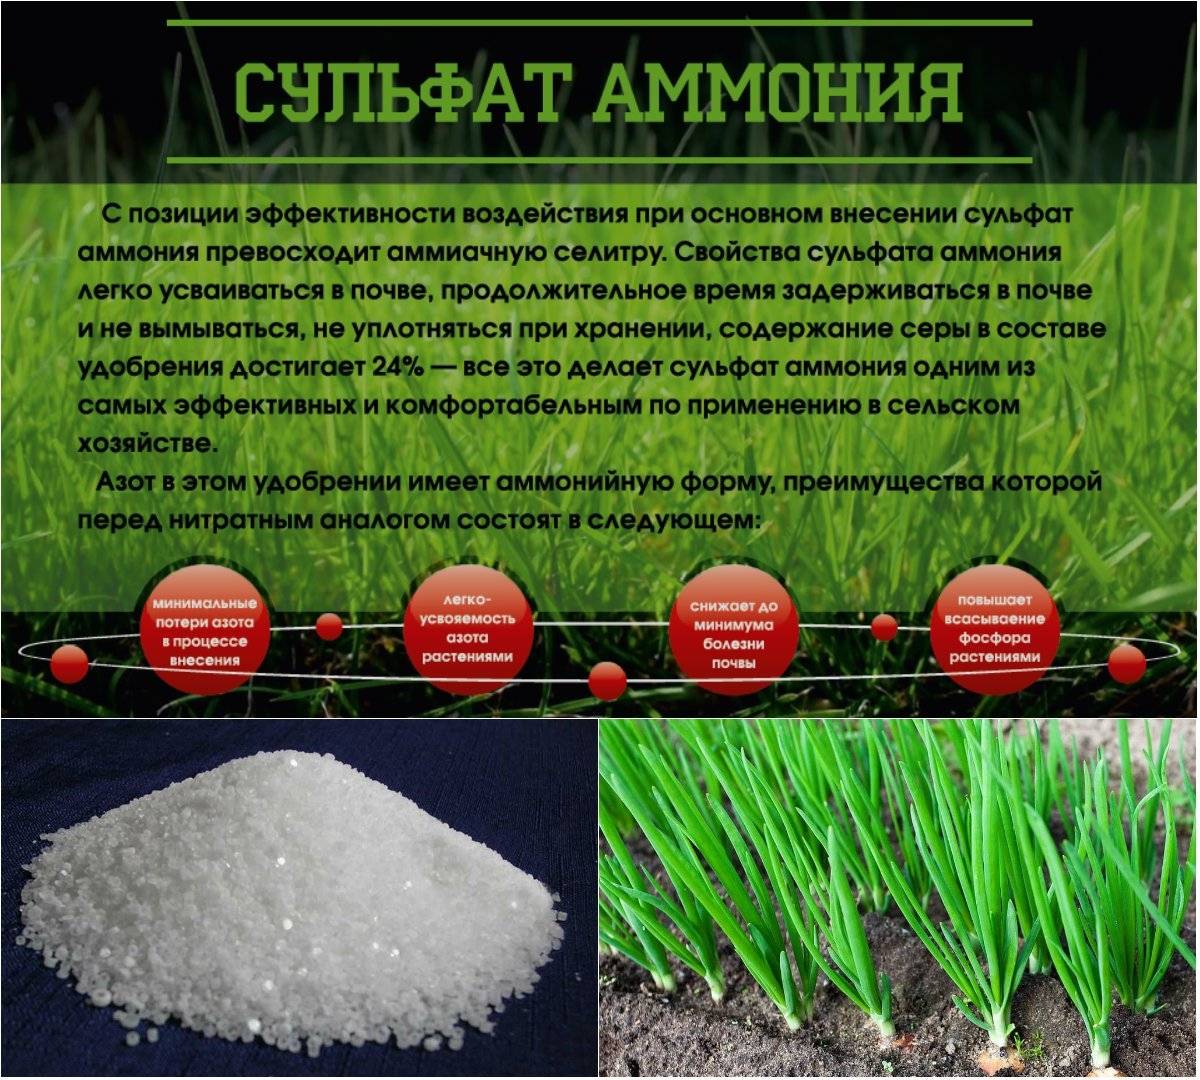 Удобрение сульфат аммония (сернокислый): применение на огороде, состав, дозировка, видео